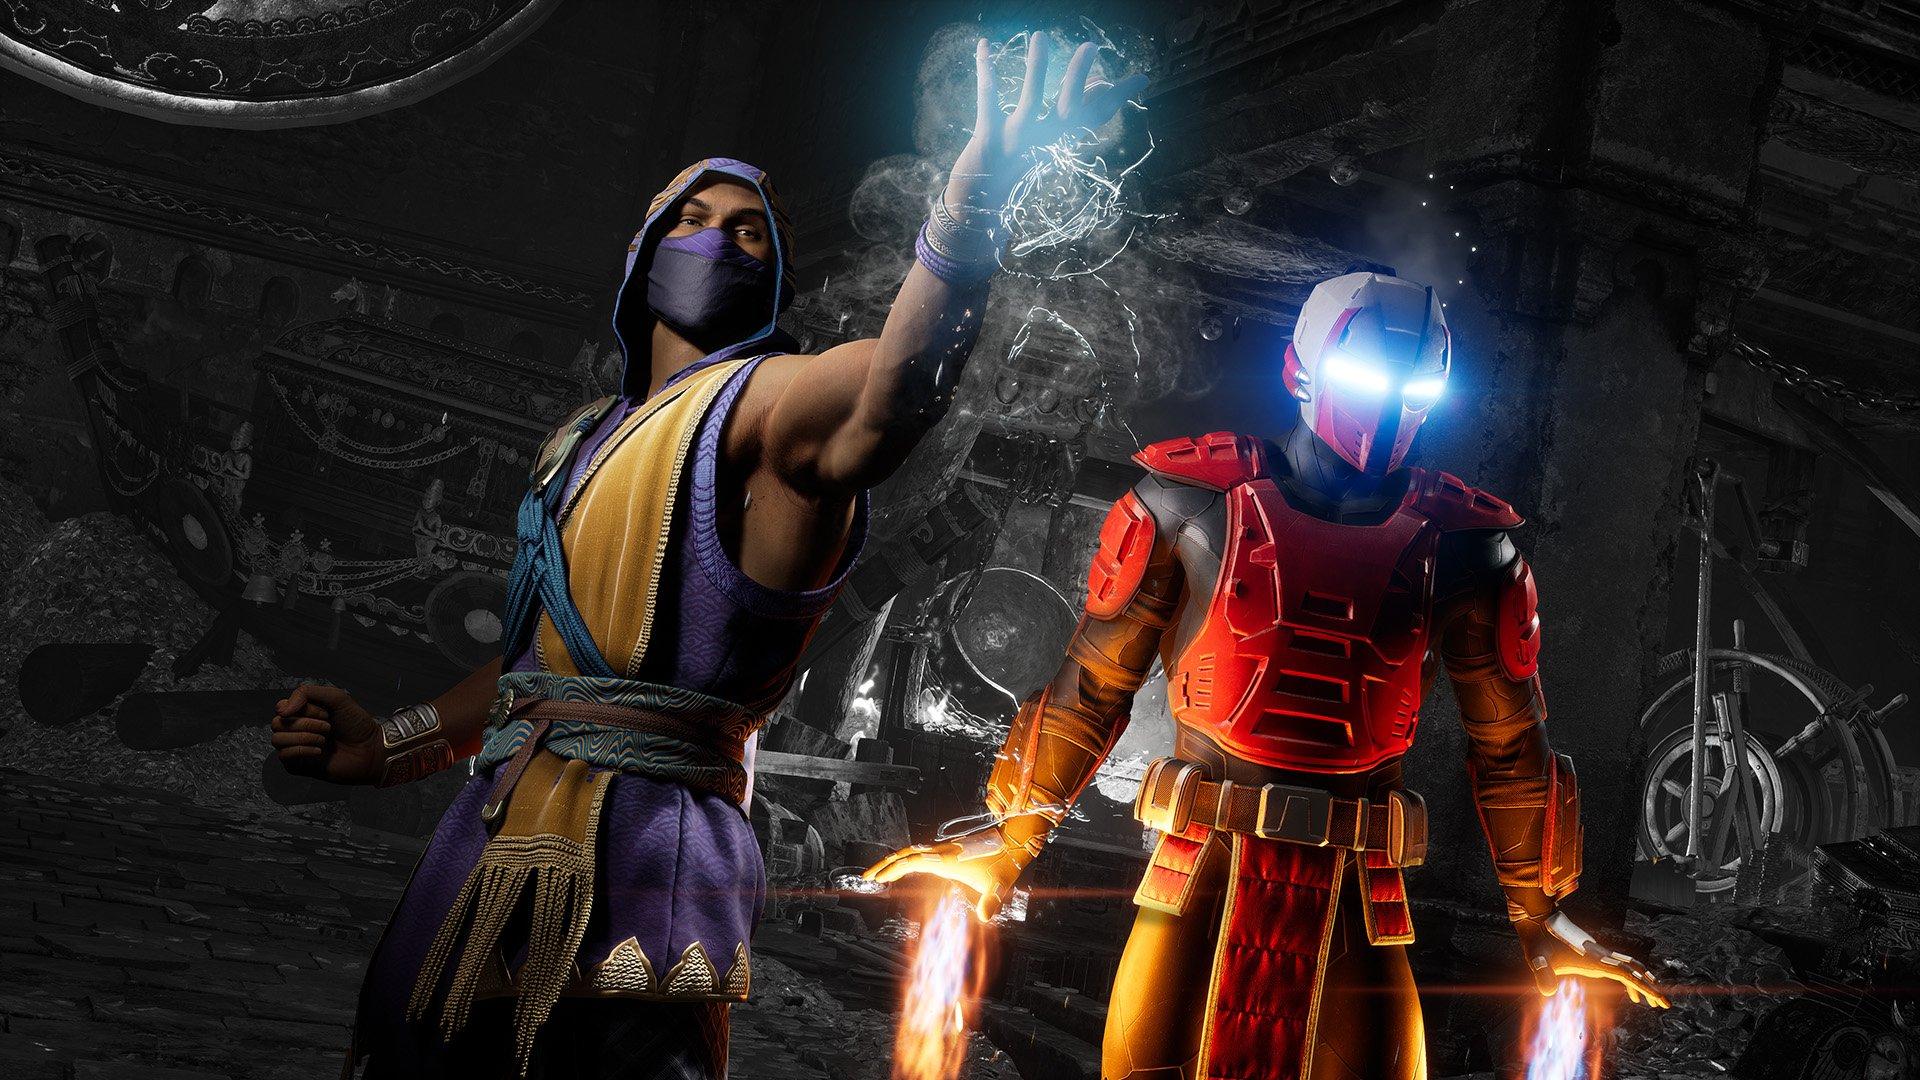 Kombat Pack 2 Buyers To Receive Bonus Mortal Kombat X DLC For Free - Game  Informer